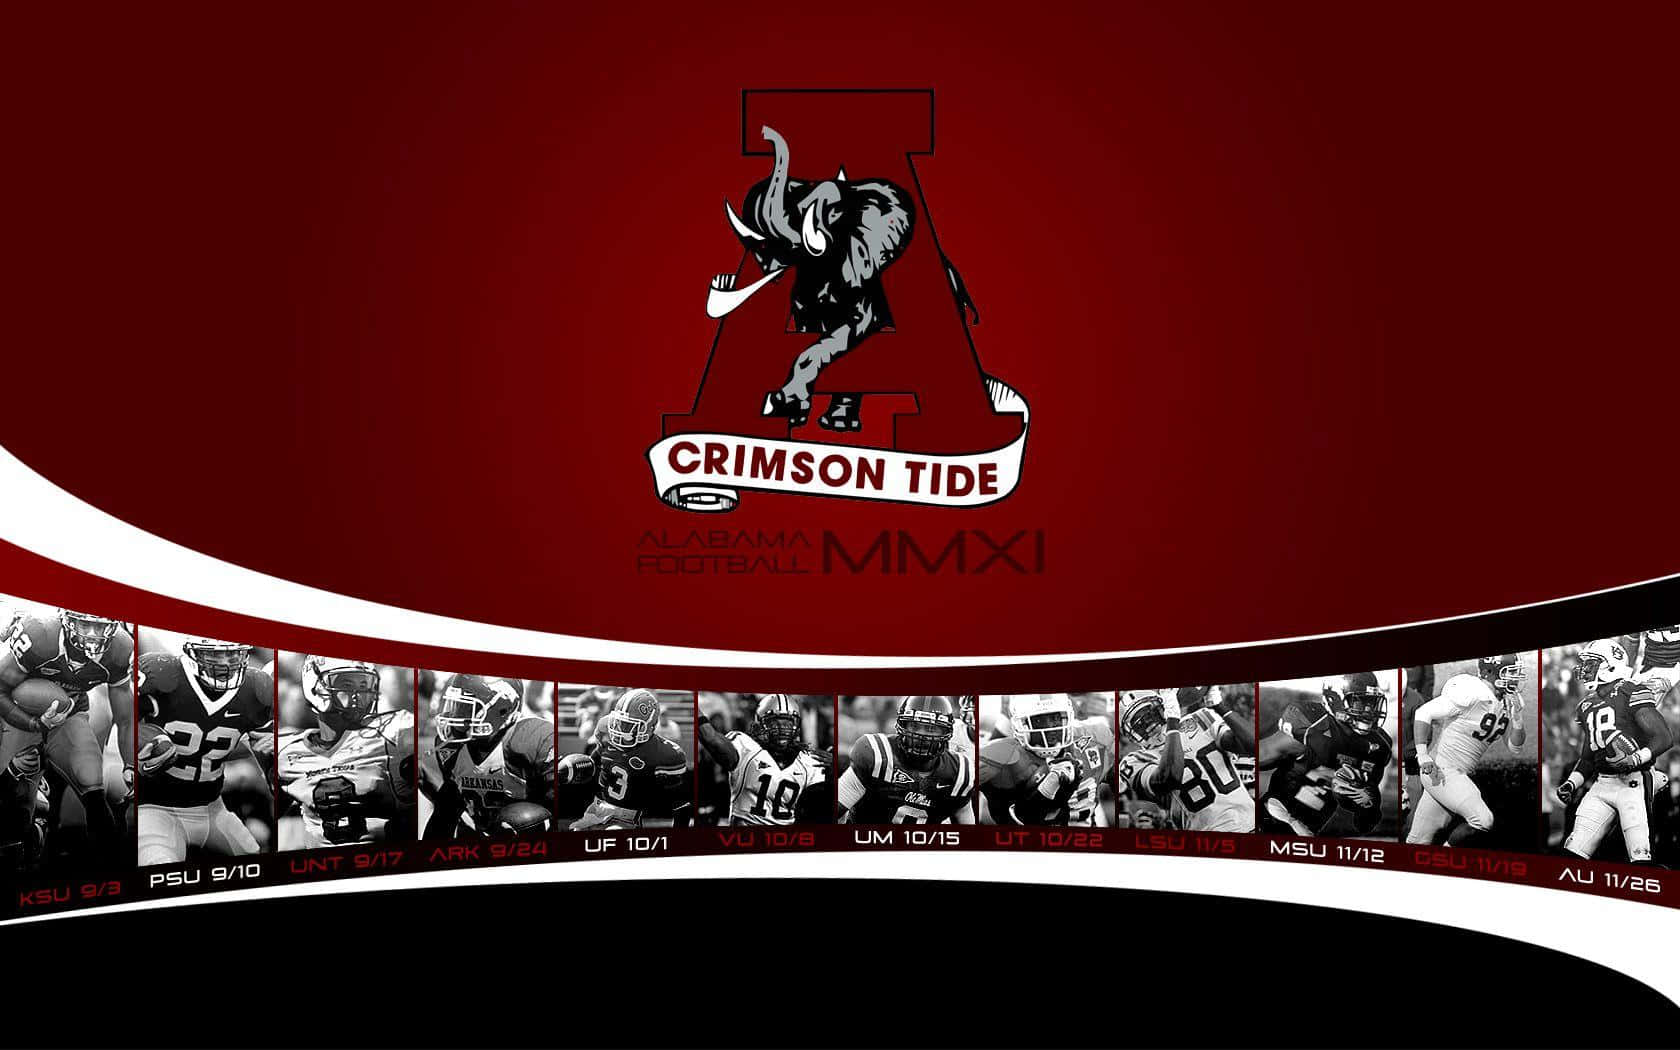 Ikonisk Crimson Tide: Alabama fodbold logo på det røde gulv. Wallpaper